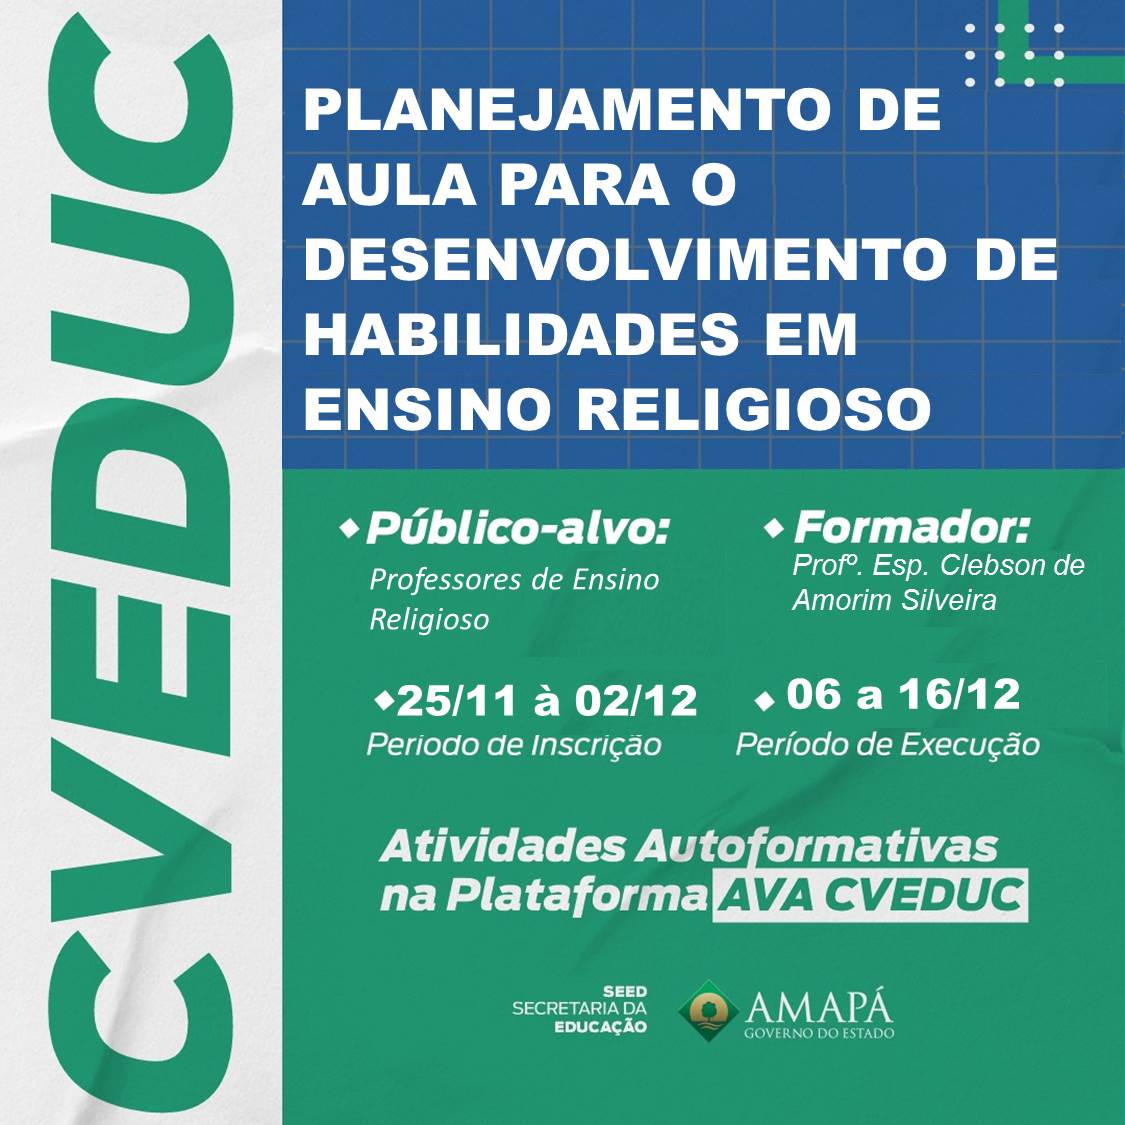 PLANEJAMENTO DE AULA PARA O DESENVOLVIMENTO DE HABILIDADES EM ENSINO RELIGIOSO